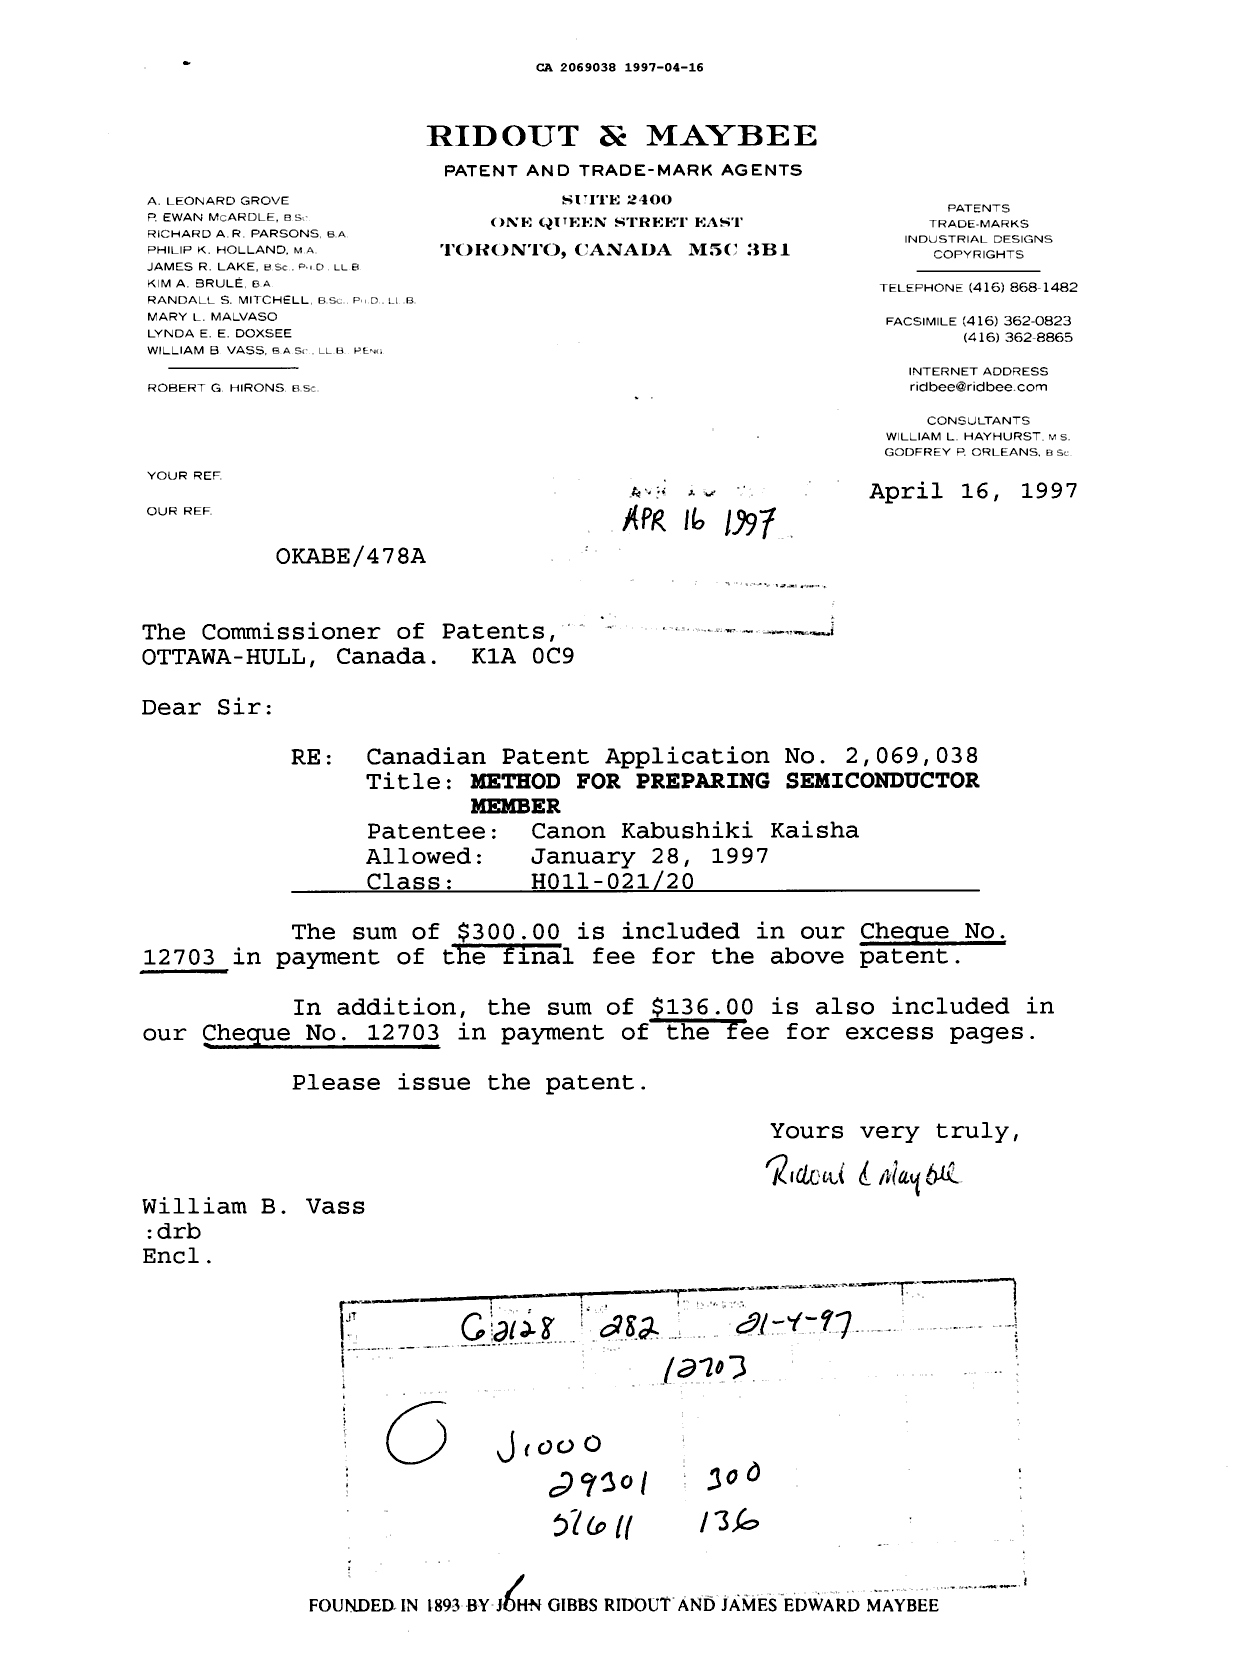 Document de brevet canadien 2069038. Correspondance reliée aux formalités 19970416. Image 1 de 1